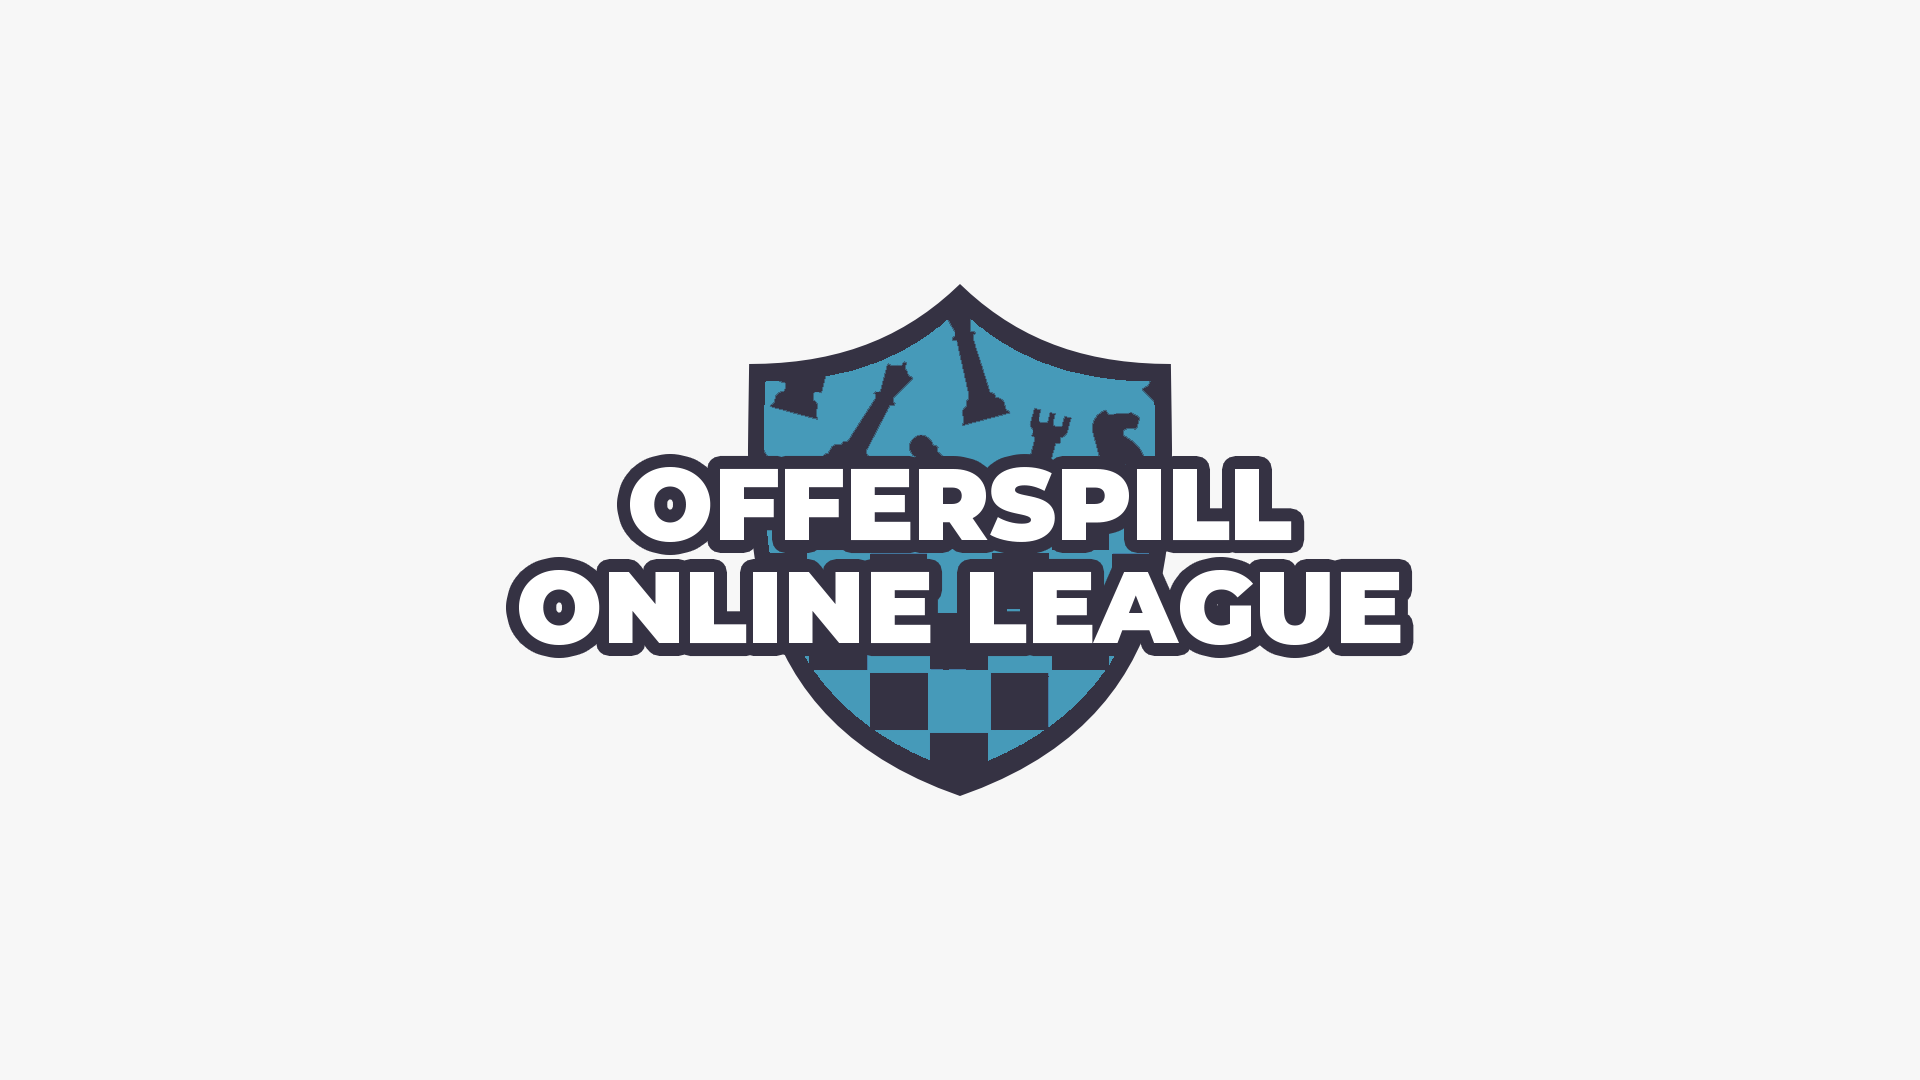 Online League: March